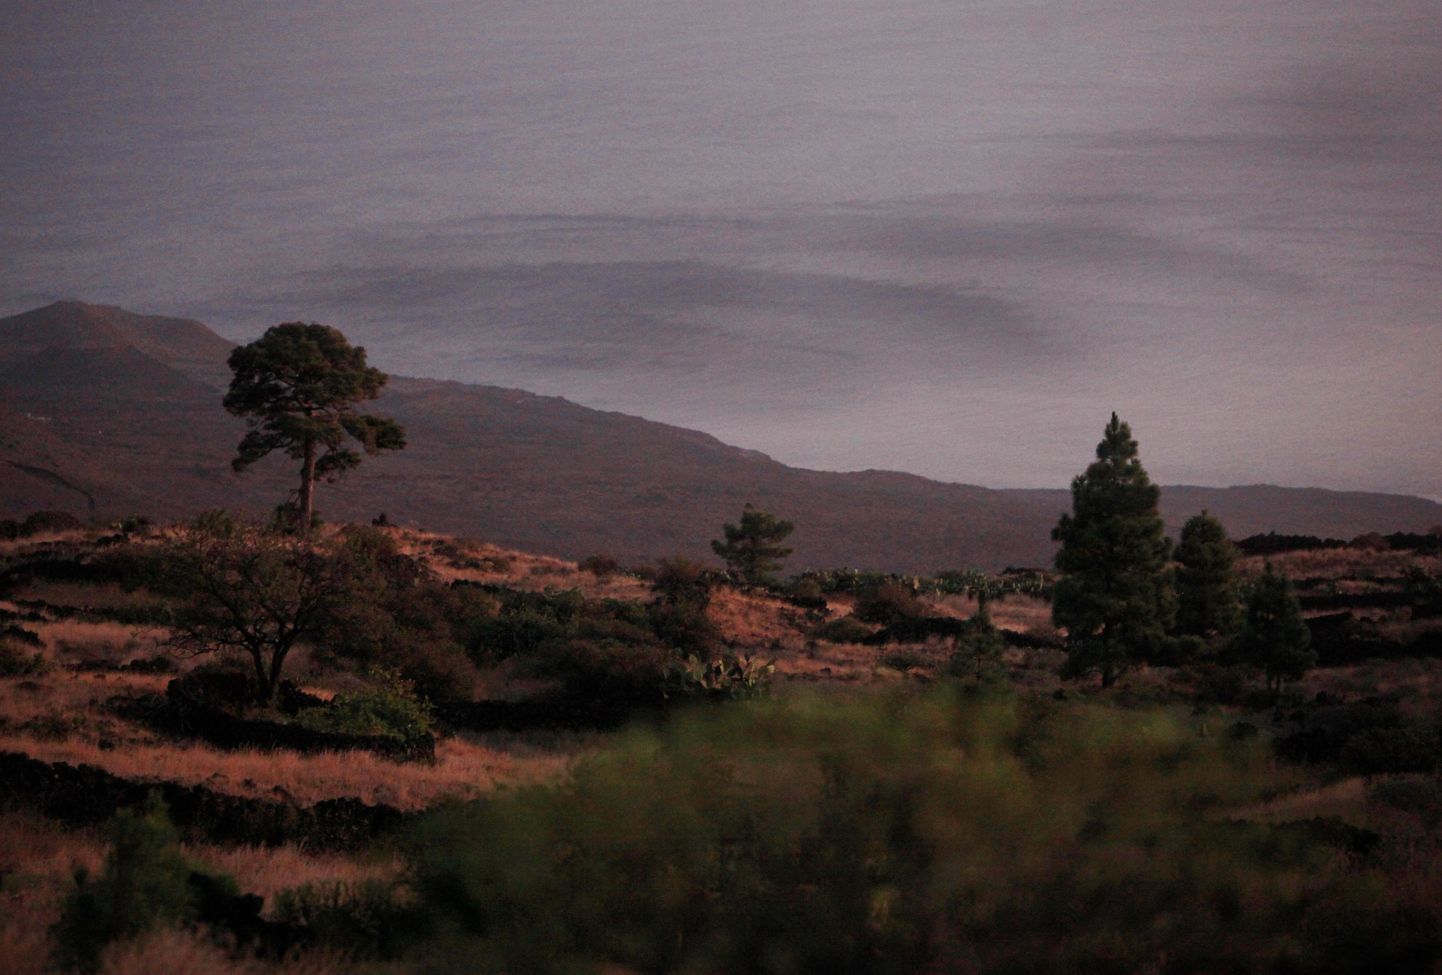 El Hierro saare lähedal merel on 12. oktoobril tehtud fotol näha pruuni laiku, mis tähistab veealuse vulkaanipurske kohta.